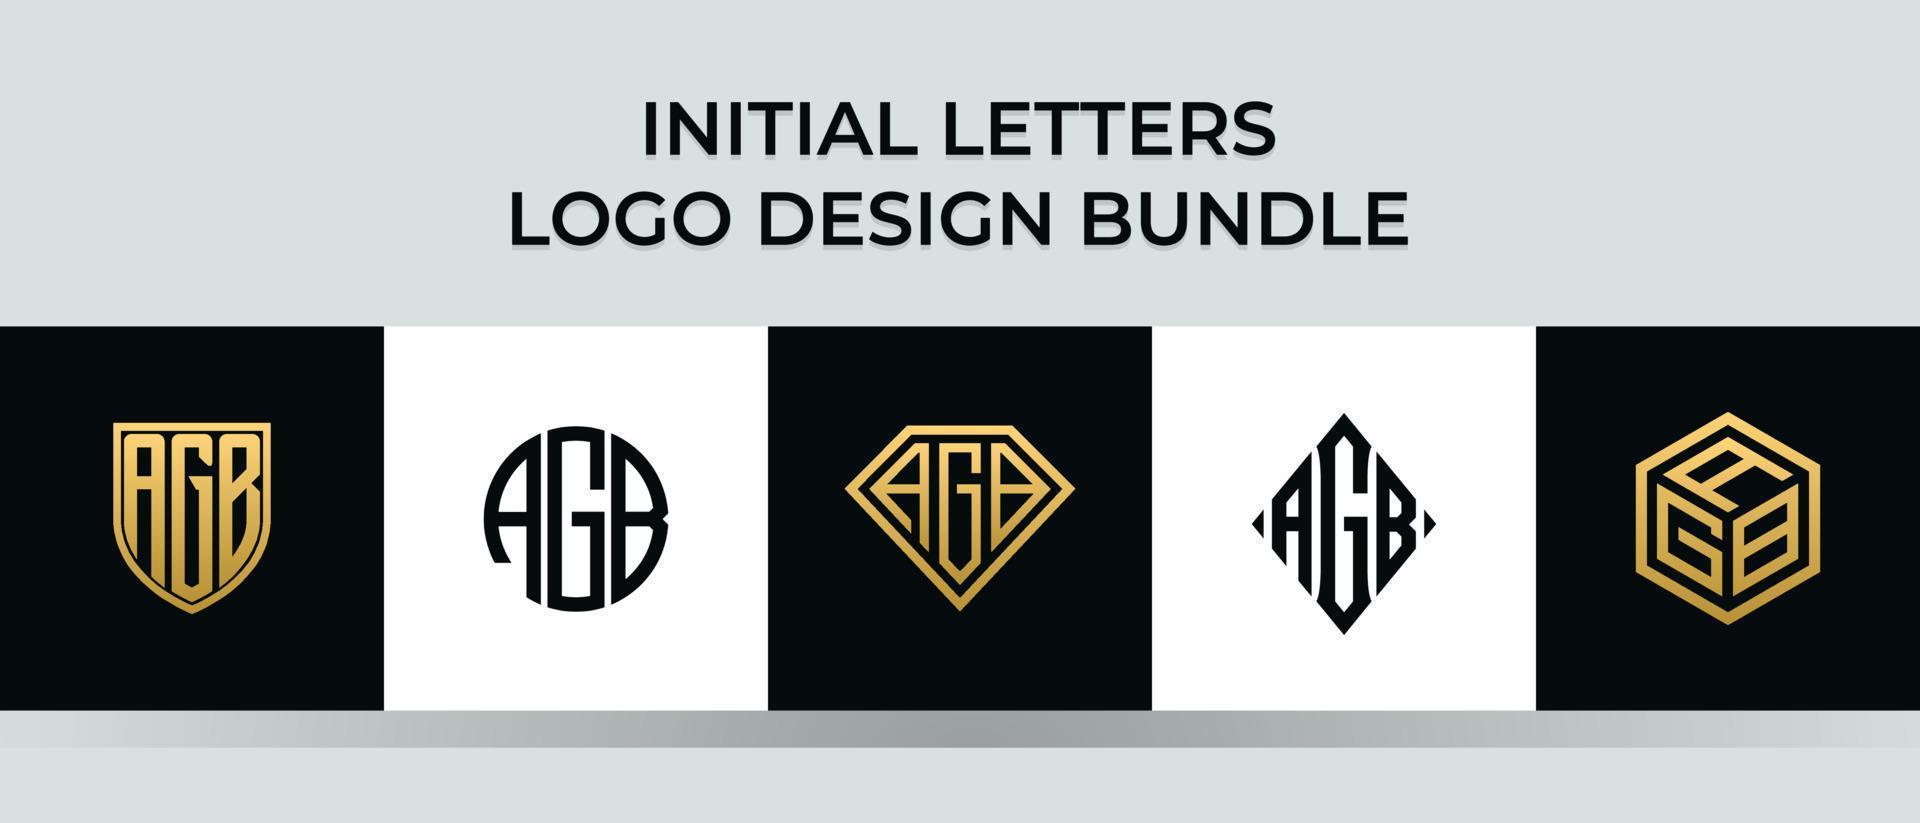 letras iniciais agb logo designs pacote vetor